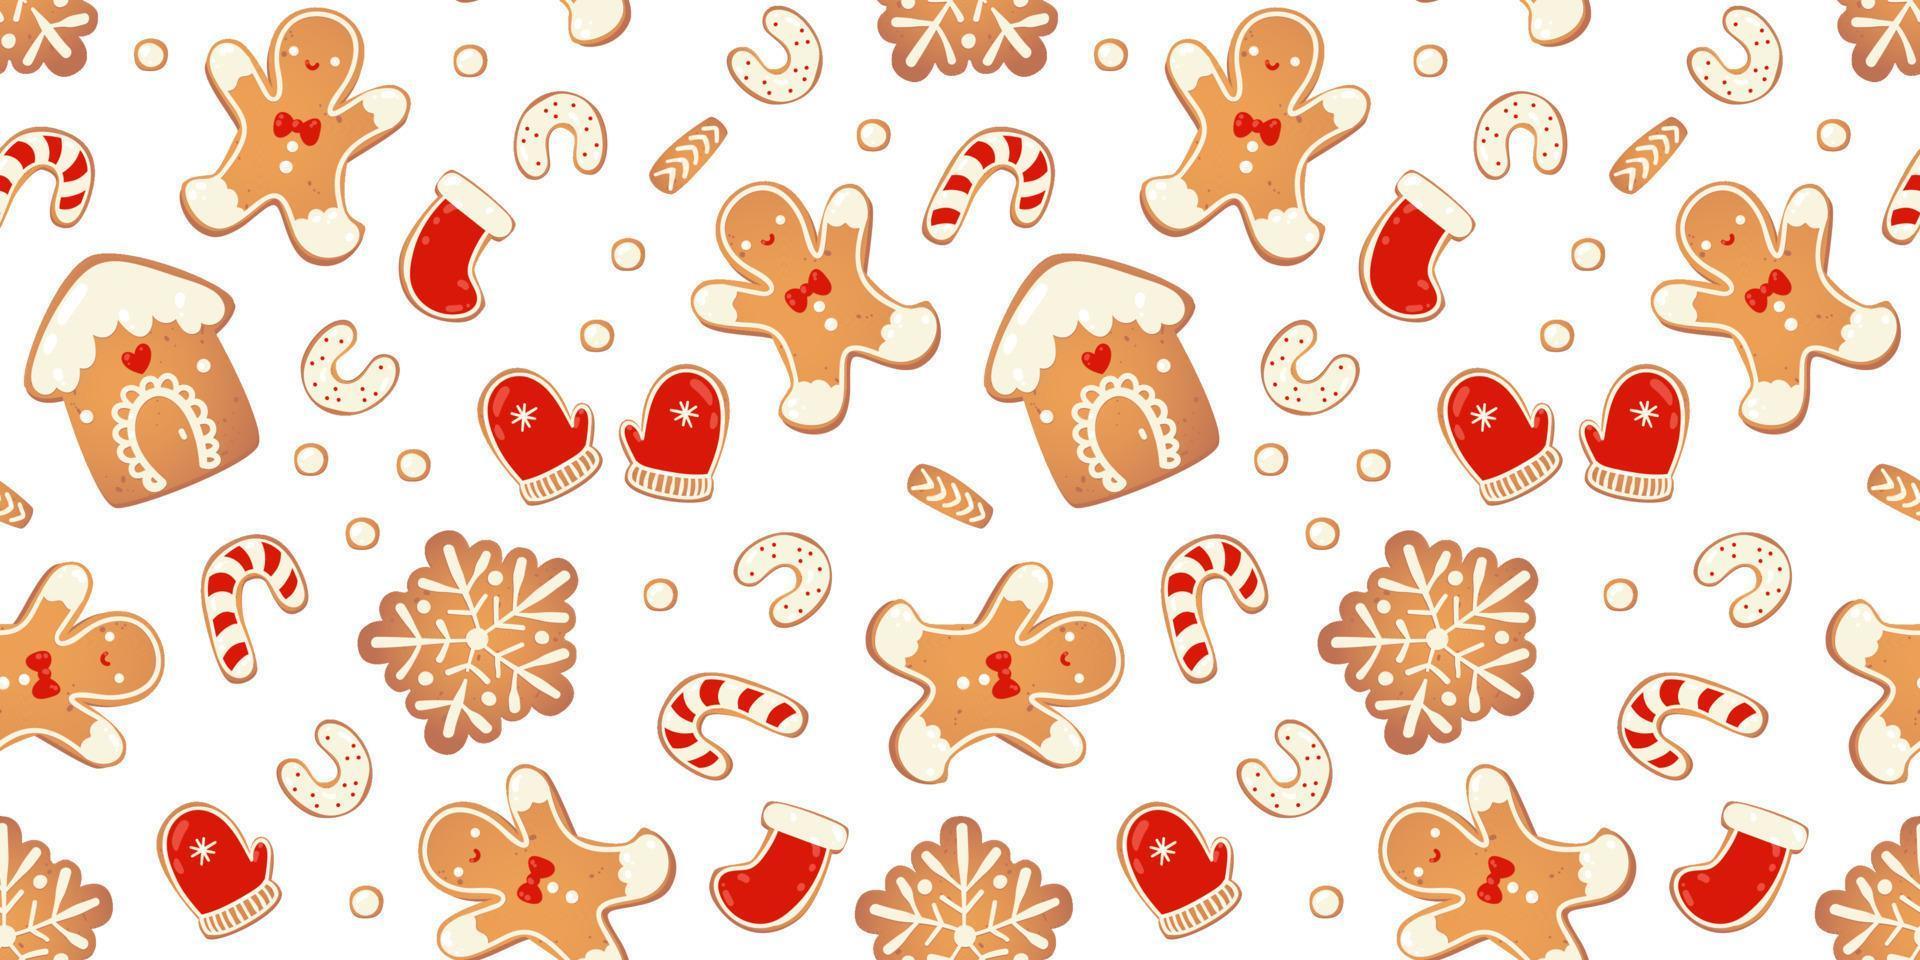 Navidad pan de jengibre vector de patrones sin fisuras. personajes de invierno en estilo de dibujos animados. fondo de diseño de vacaciones. estilo escandinavo de año nuevo.